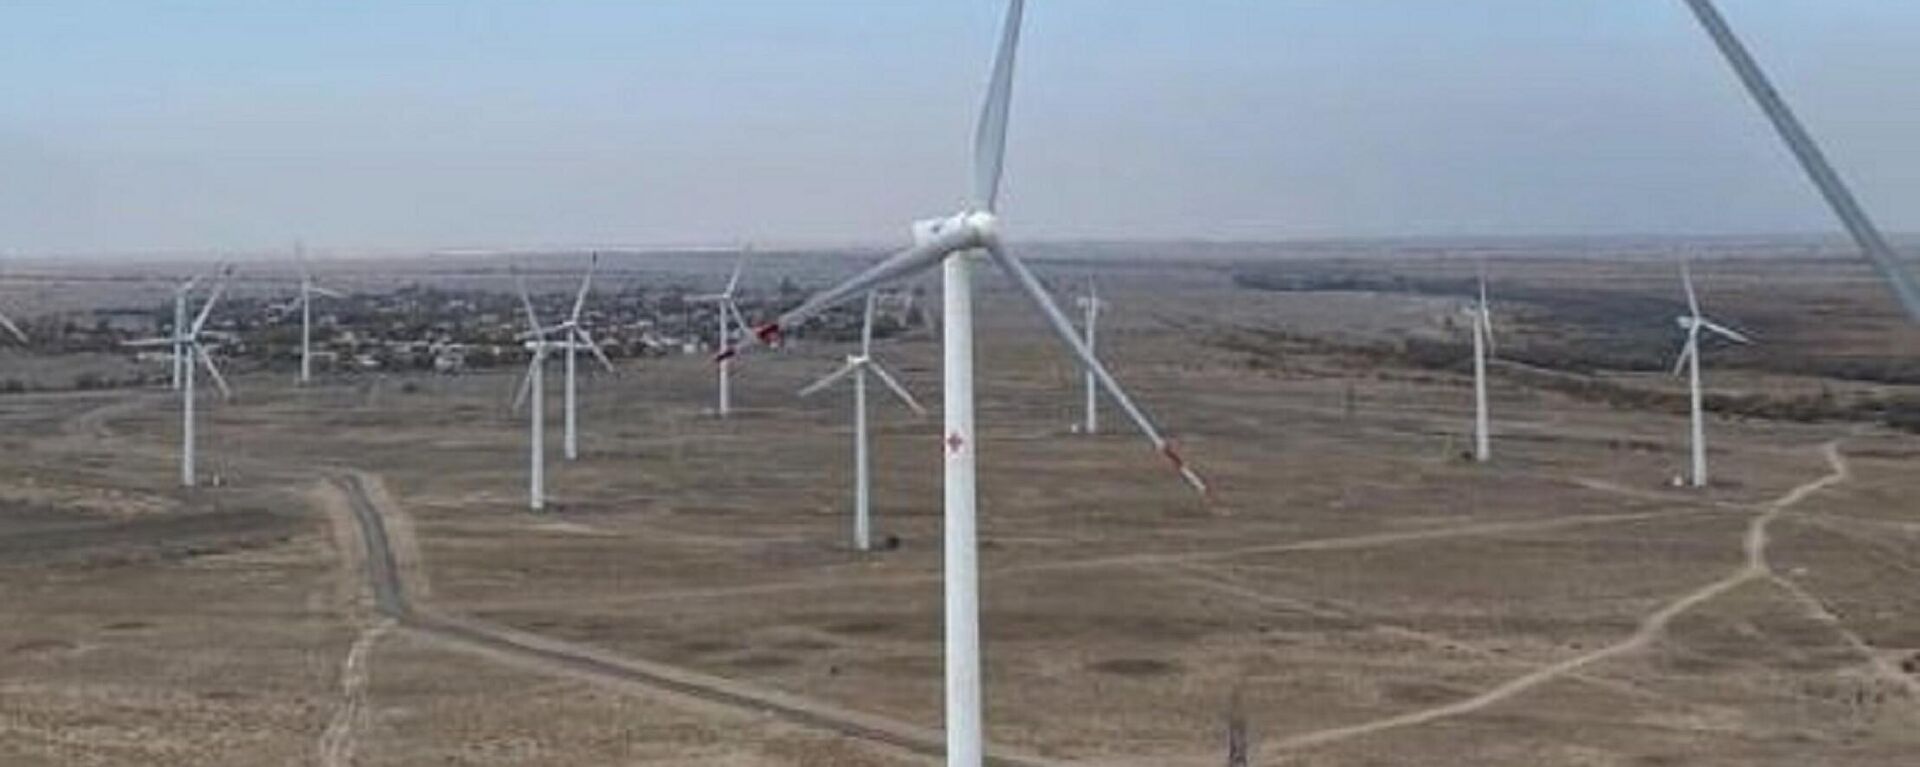 Новый парк ветряных электростанций компании Самрук-Энерго под Алматы  - Sputnik Казахстан, 1920, 12.09.2022